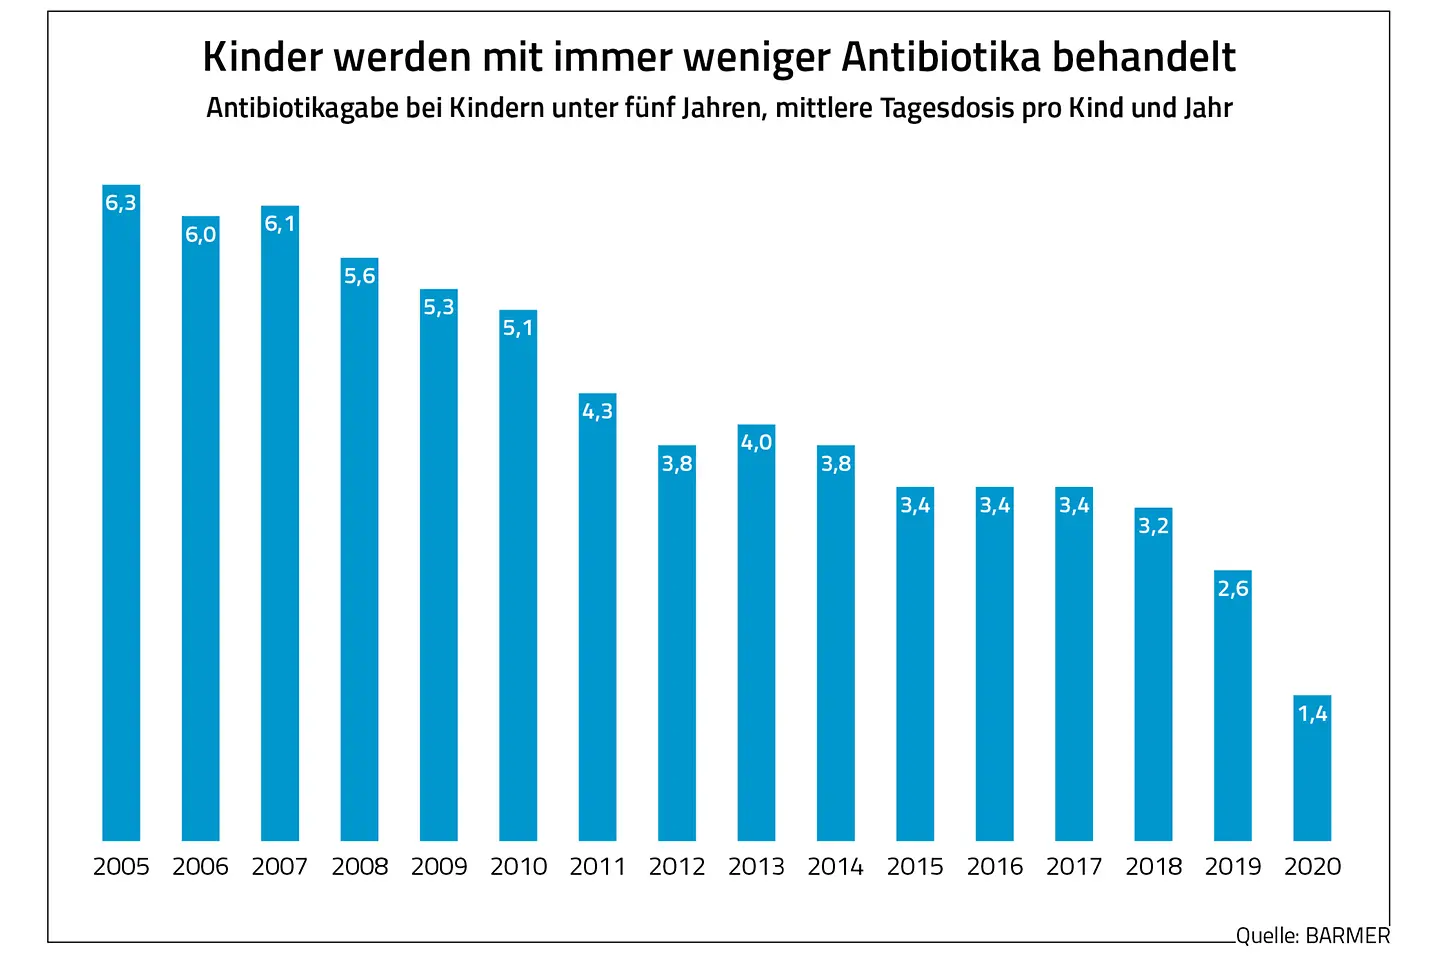 Die Grafik zeigt die mittlere Tagesdosis der Antibiotikagabe bei Kindern unter fünf Jahren pro Kind und Jahr.